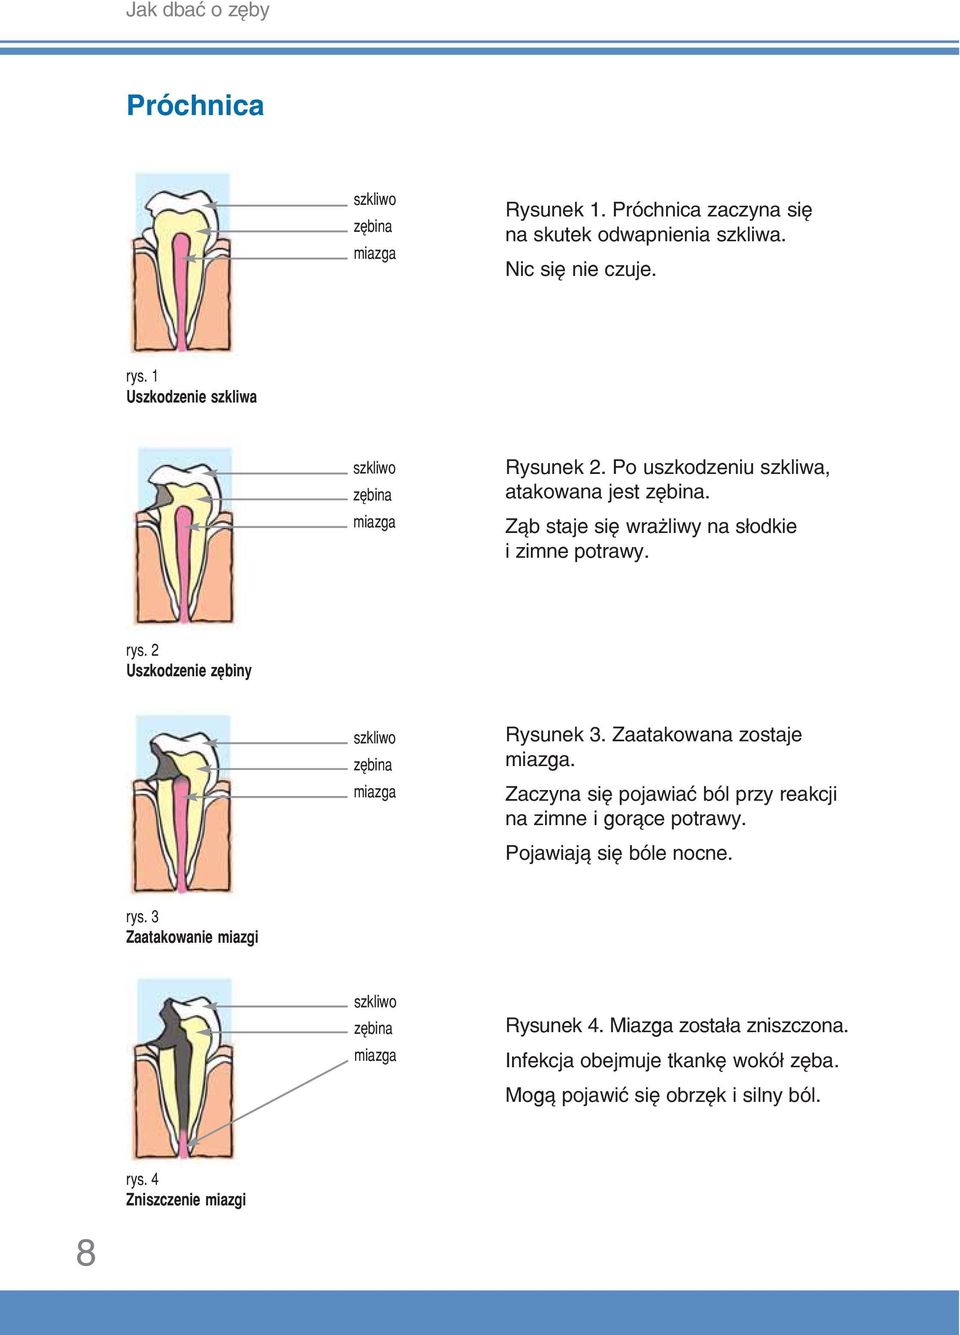 2 Uszkodzenie zębiny szkliwo zębina miazga Rysunek 3. Zaatakowana zostaje miazga. Zaczyna się pojawiać ból przy reakcji na zimne i gorące potrawy.